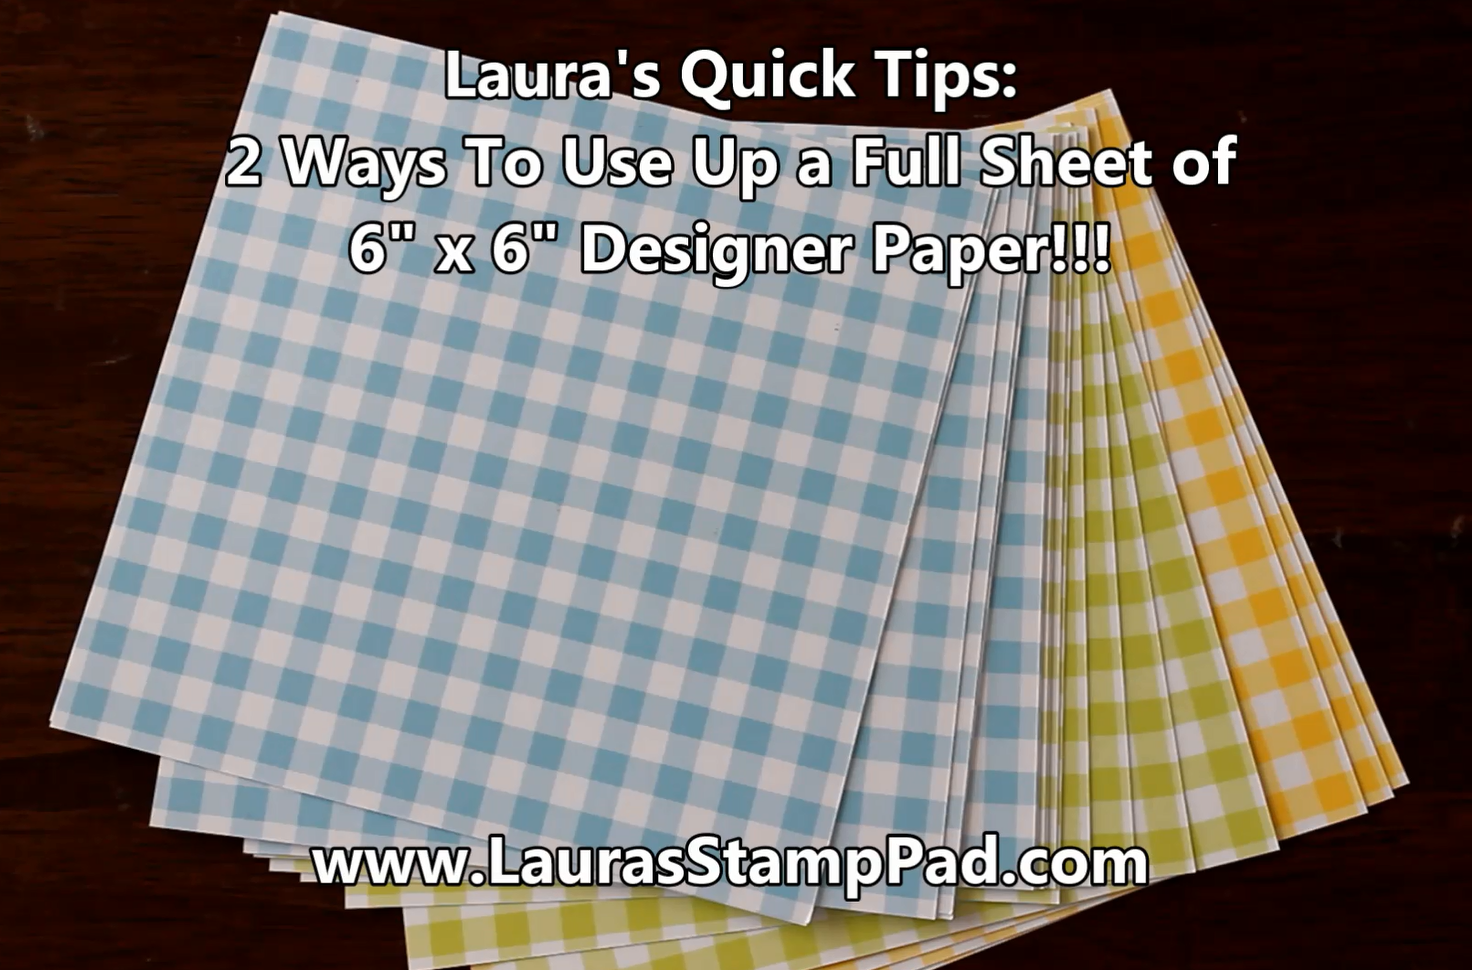 Laura's Quick Tips: 6" x 6" Designer Paper, www.LaurasStampPad.com